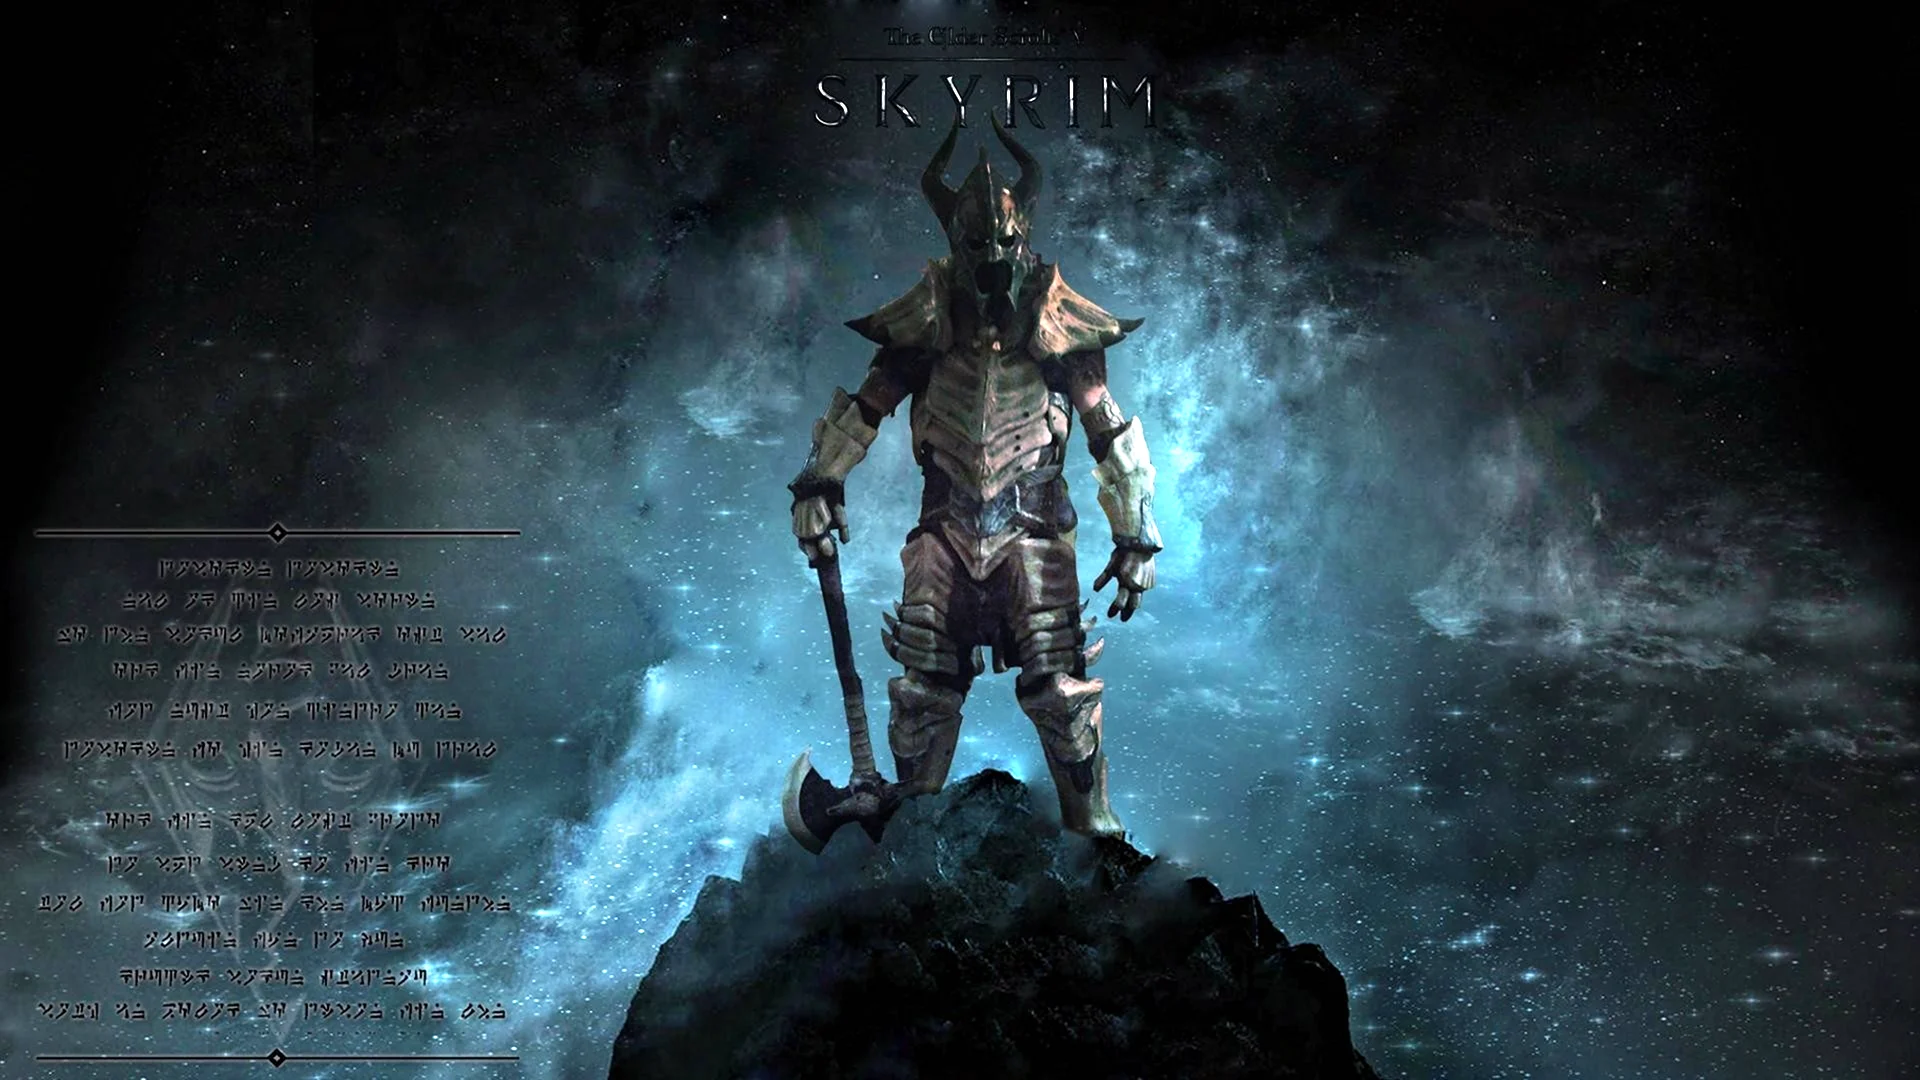 The Elder Scrolls v Skyrim - Dawnguard